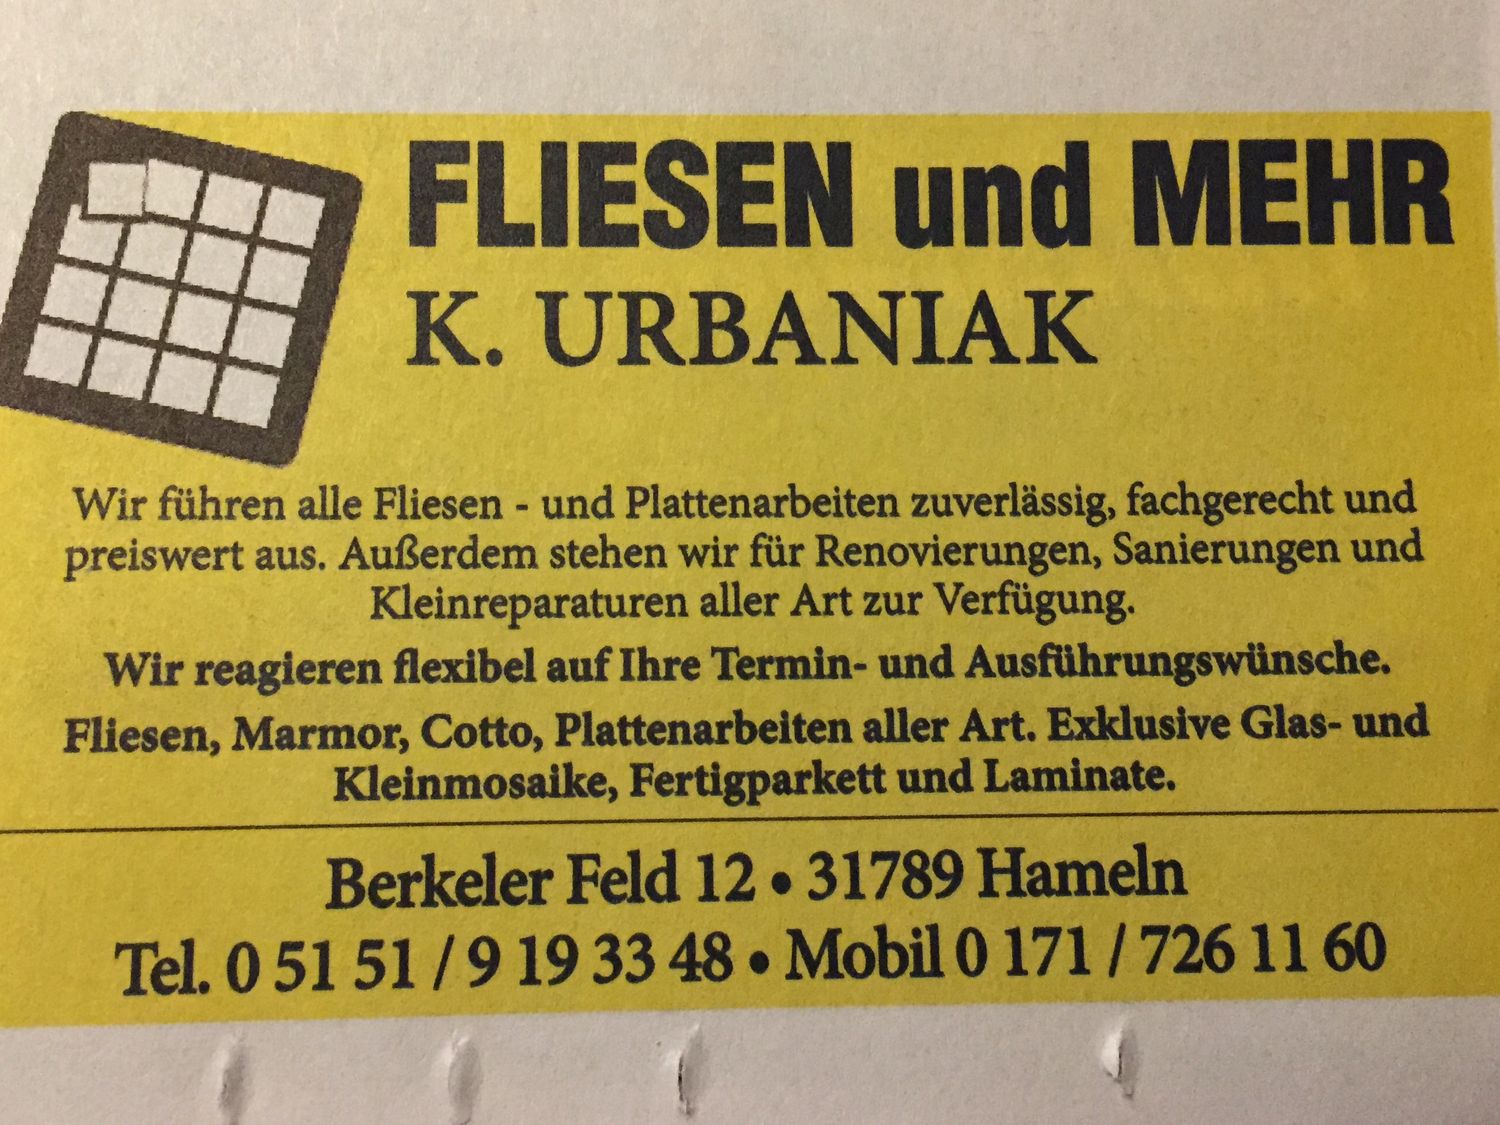 Urbaniak Klaus - Fliesen und mehr! - 1 Foto - Hameln Wangelist - Berkeler  Feld | golocal